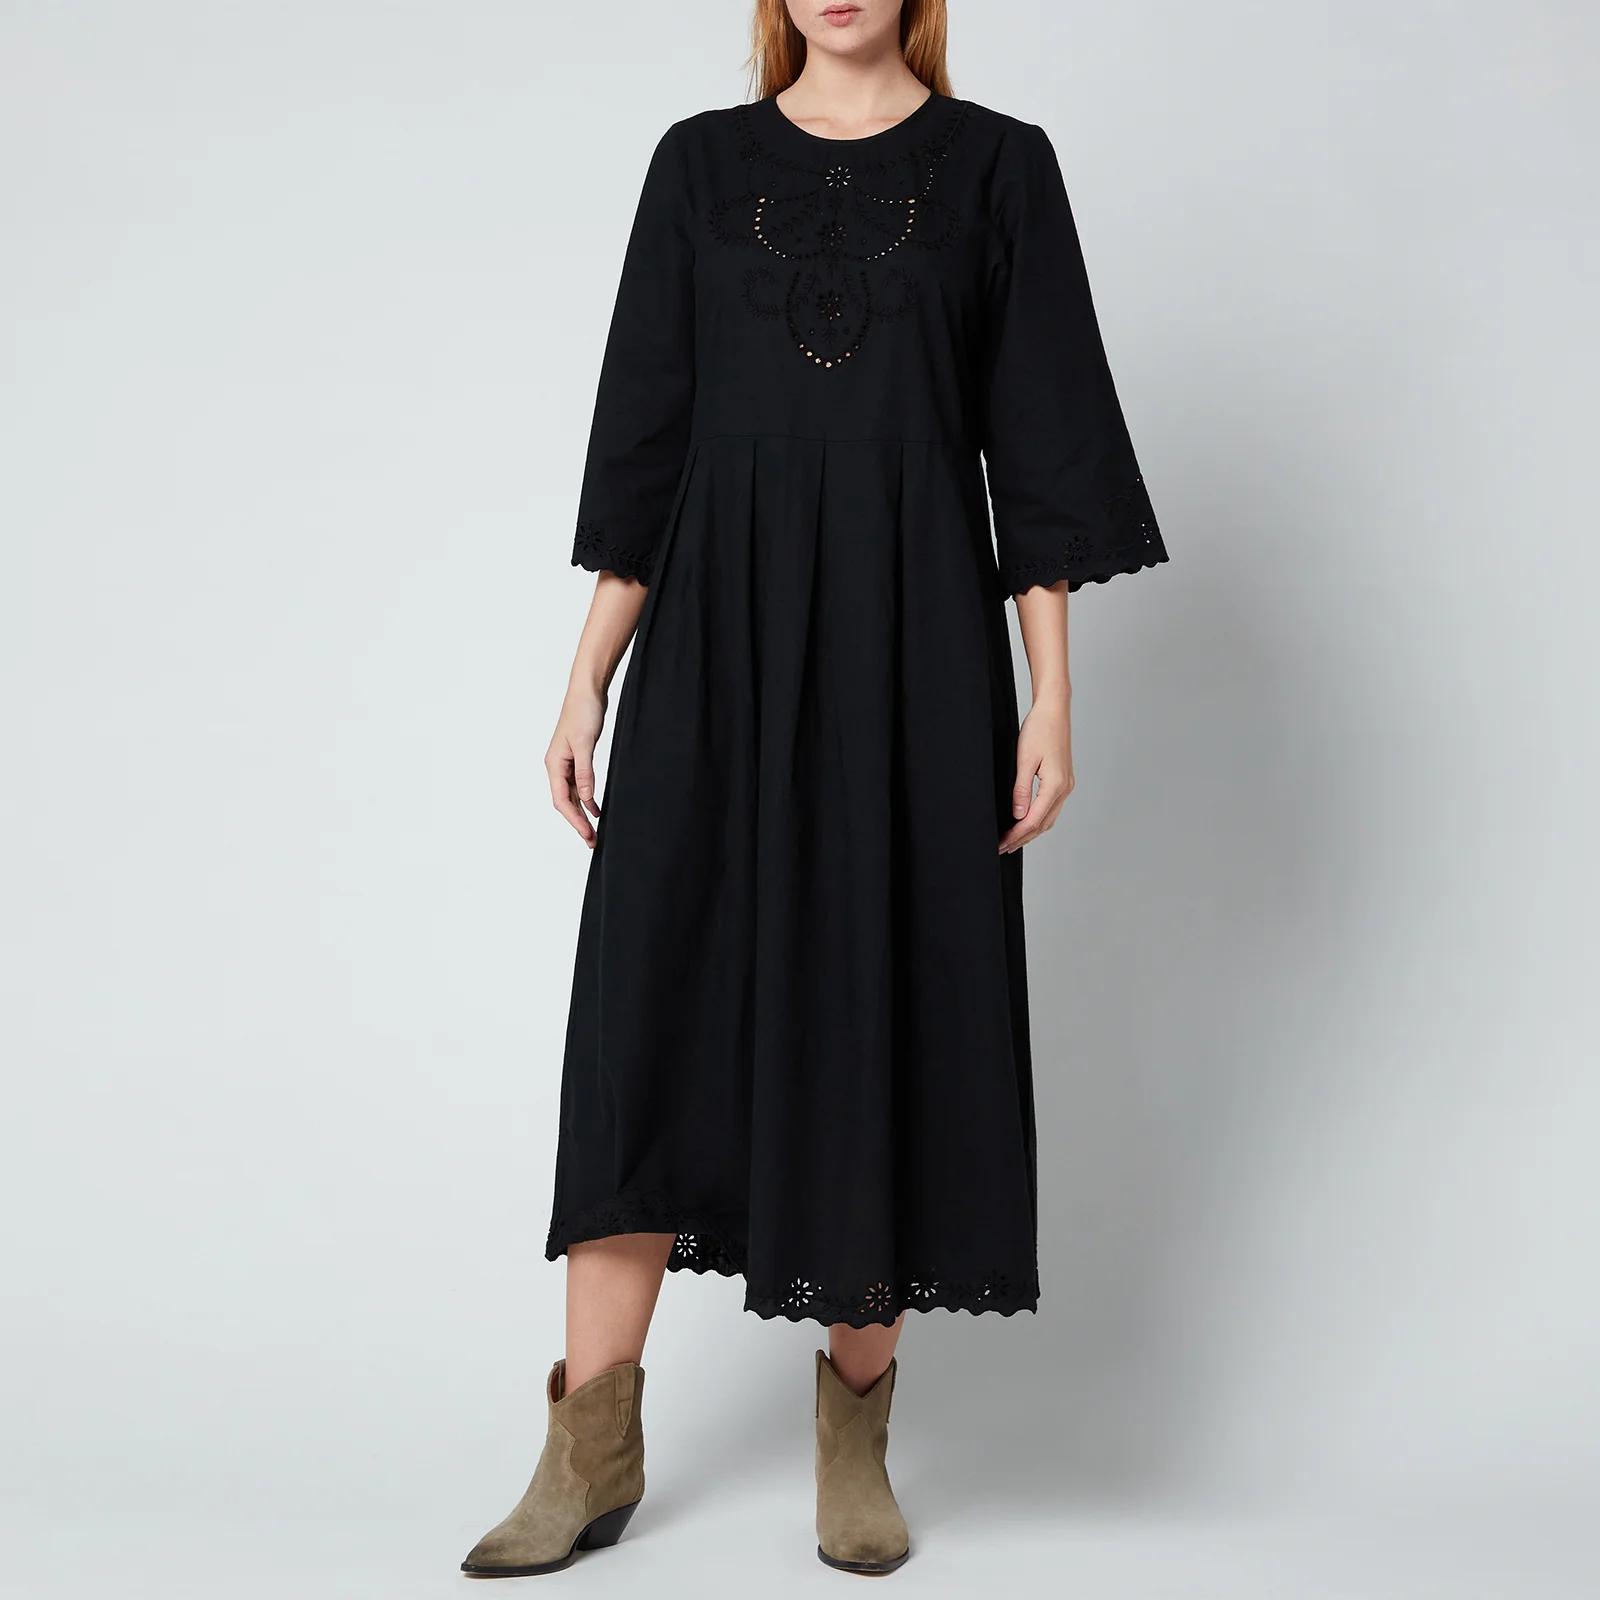 Skall Studio Women's Franka Dress - Black Image 1